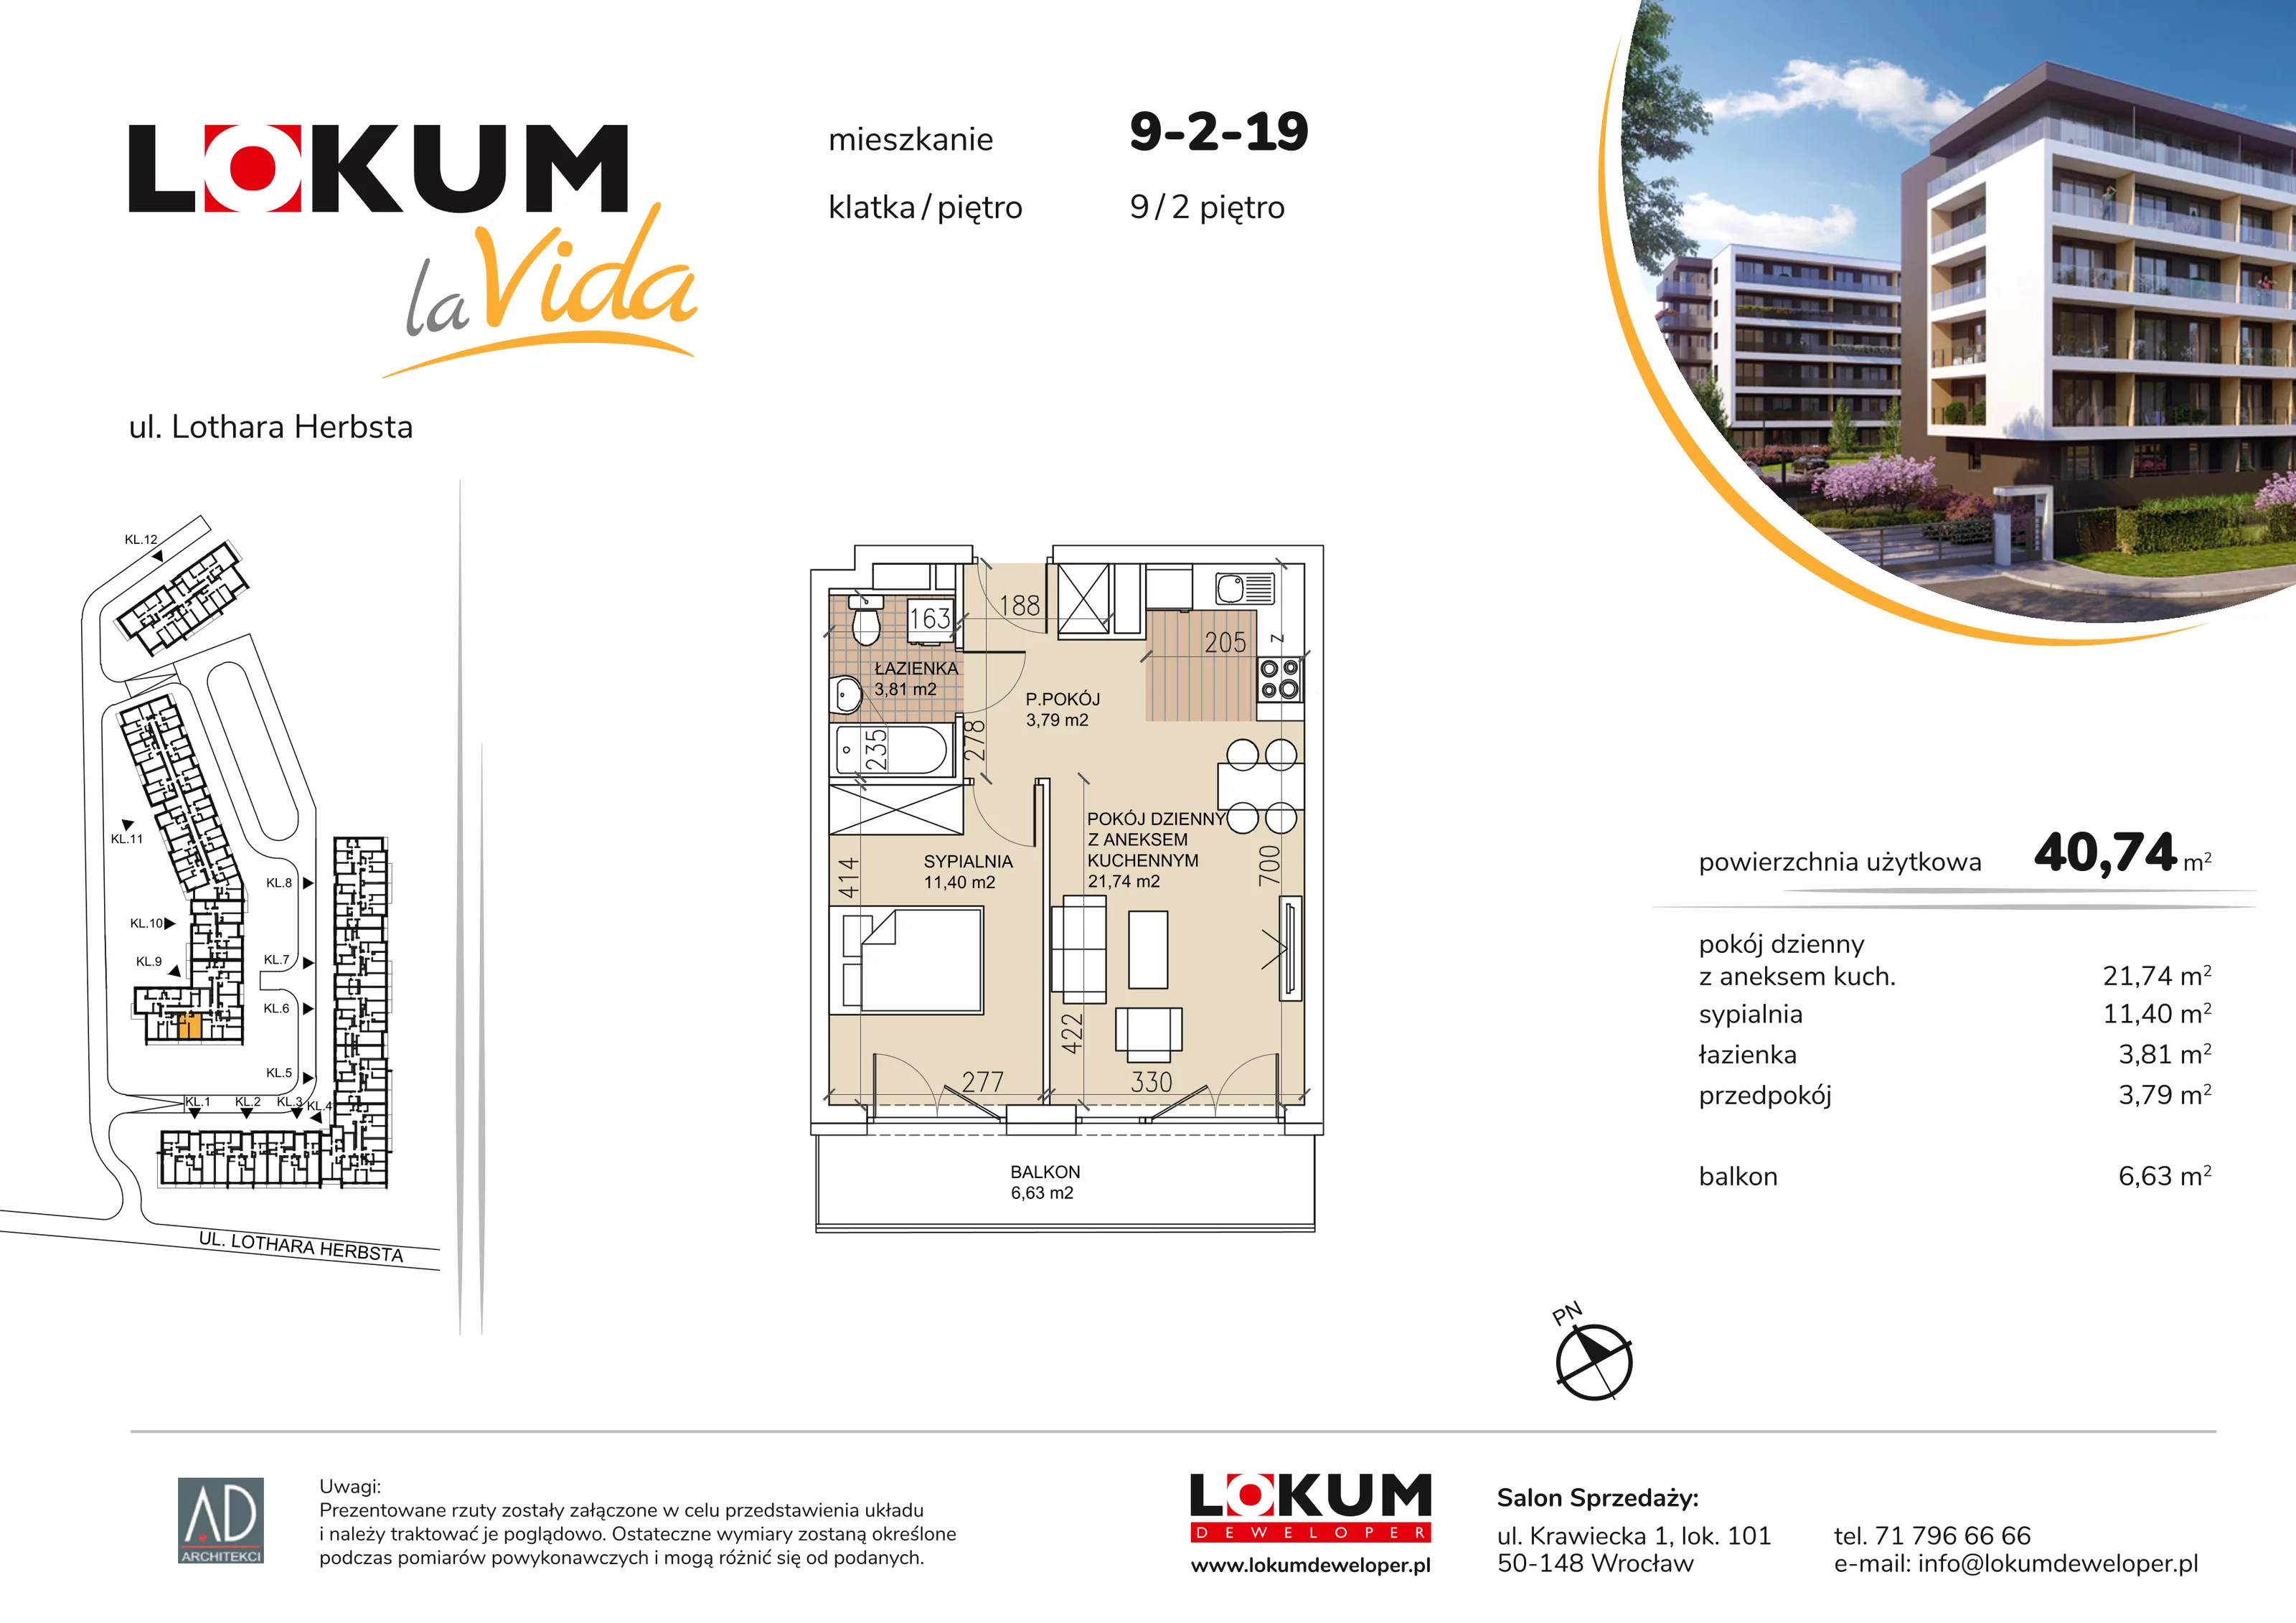 Mieszkanie 40,74 m², piętro 2, oferta nr 9-2-19, Lokum la Vida, Wrocław, Sołtysowice, ul. Lothara Herbsta